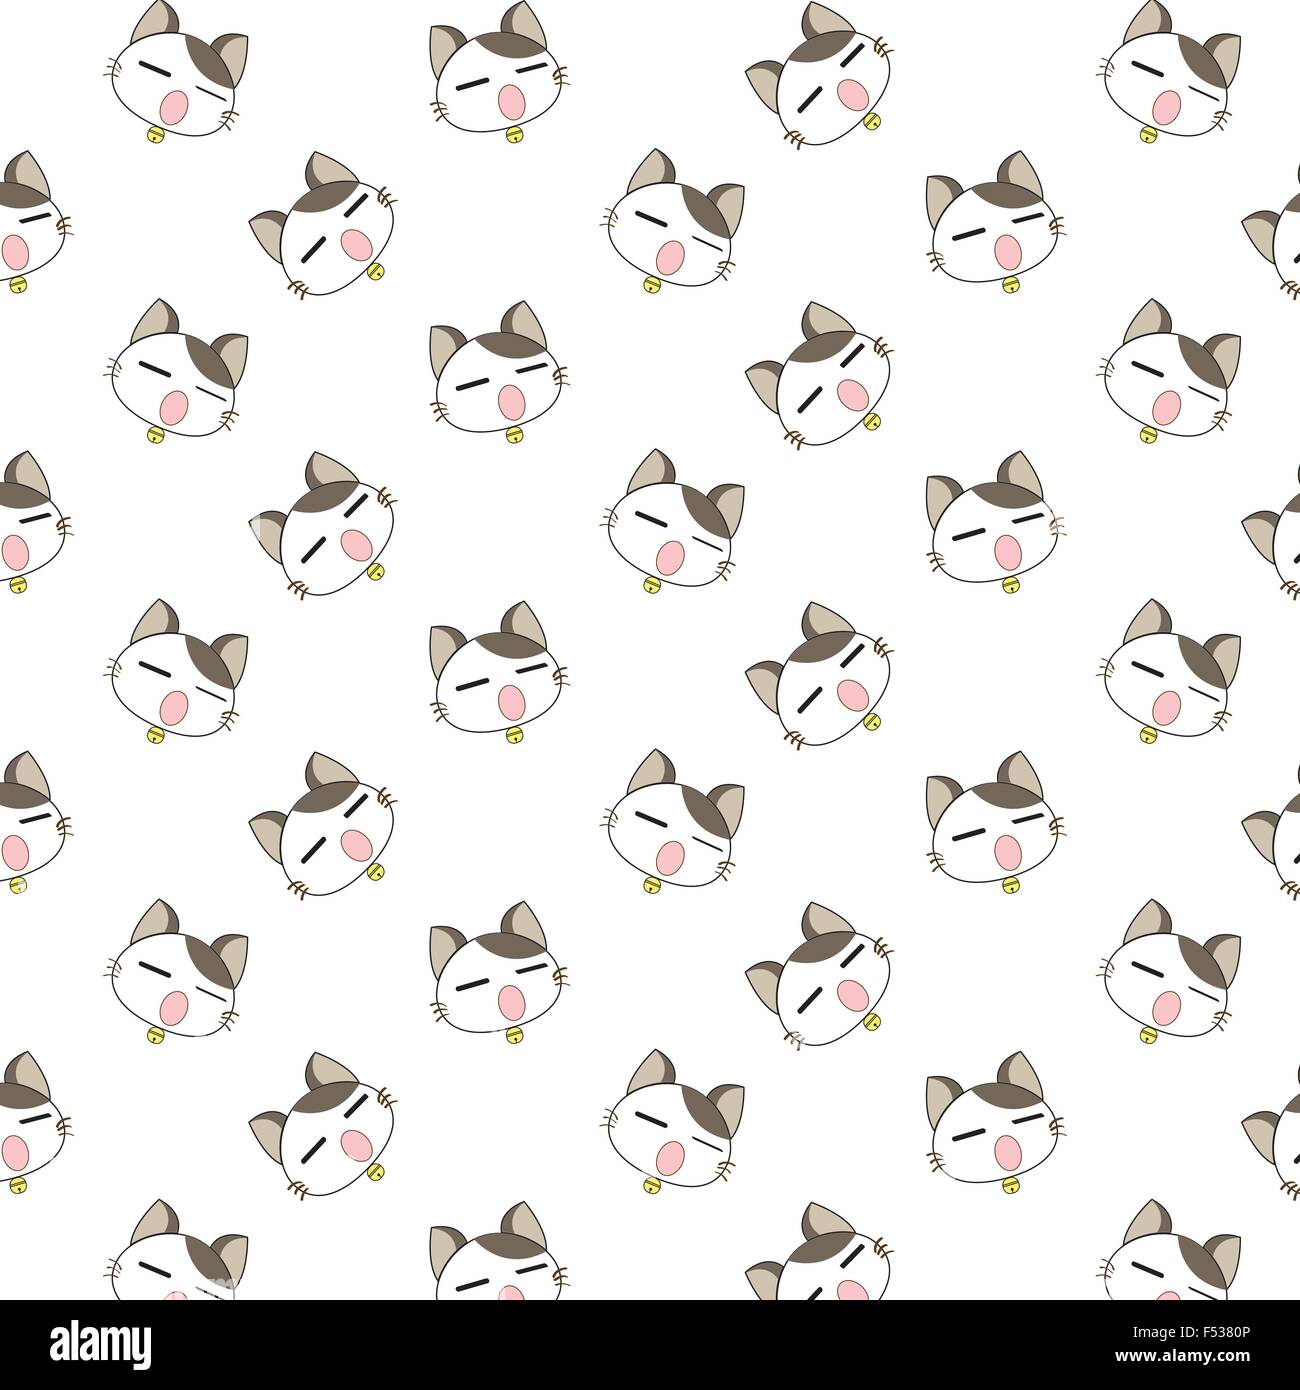 Cute Cartoon Cats Pattern. Stock Vector